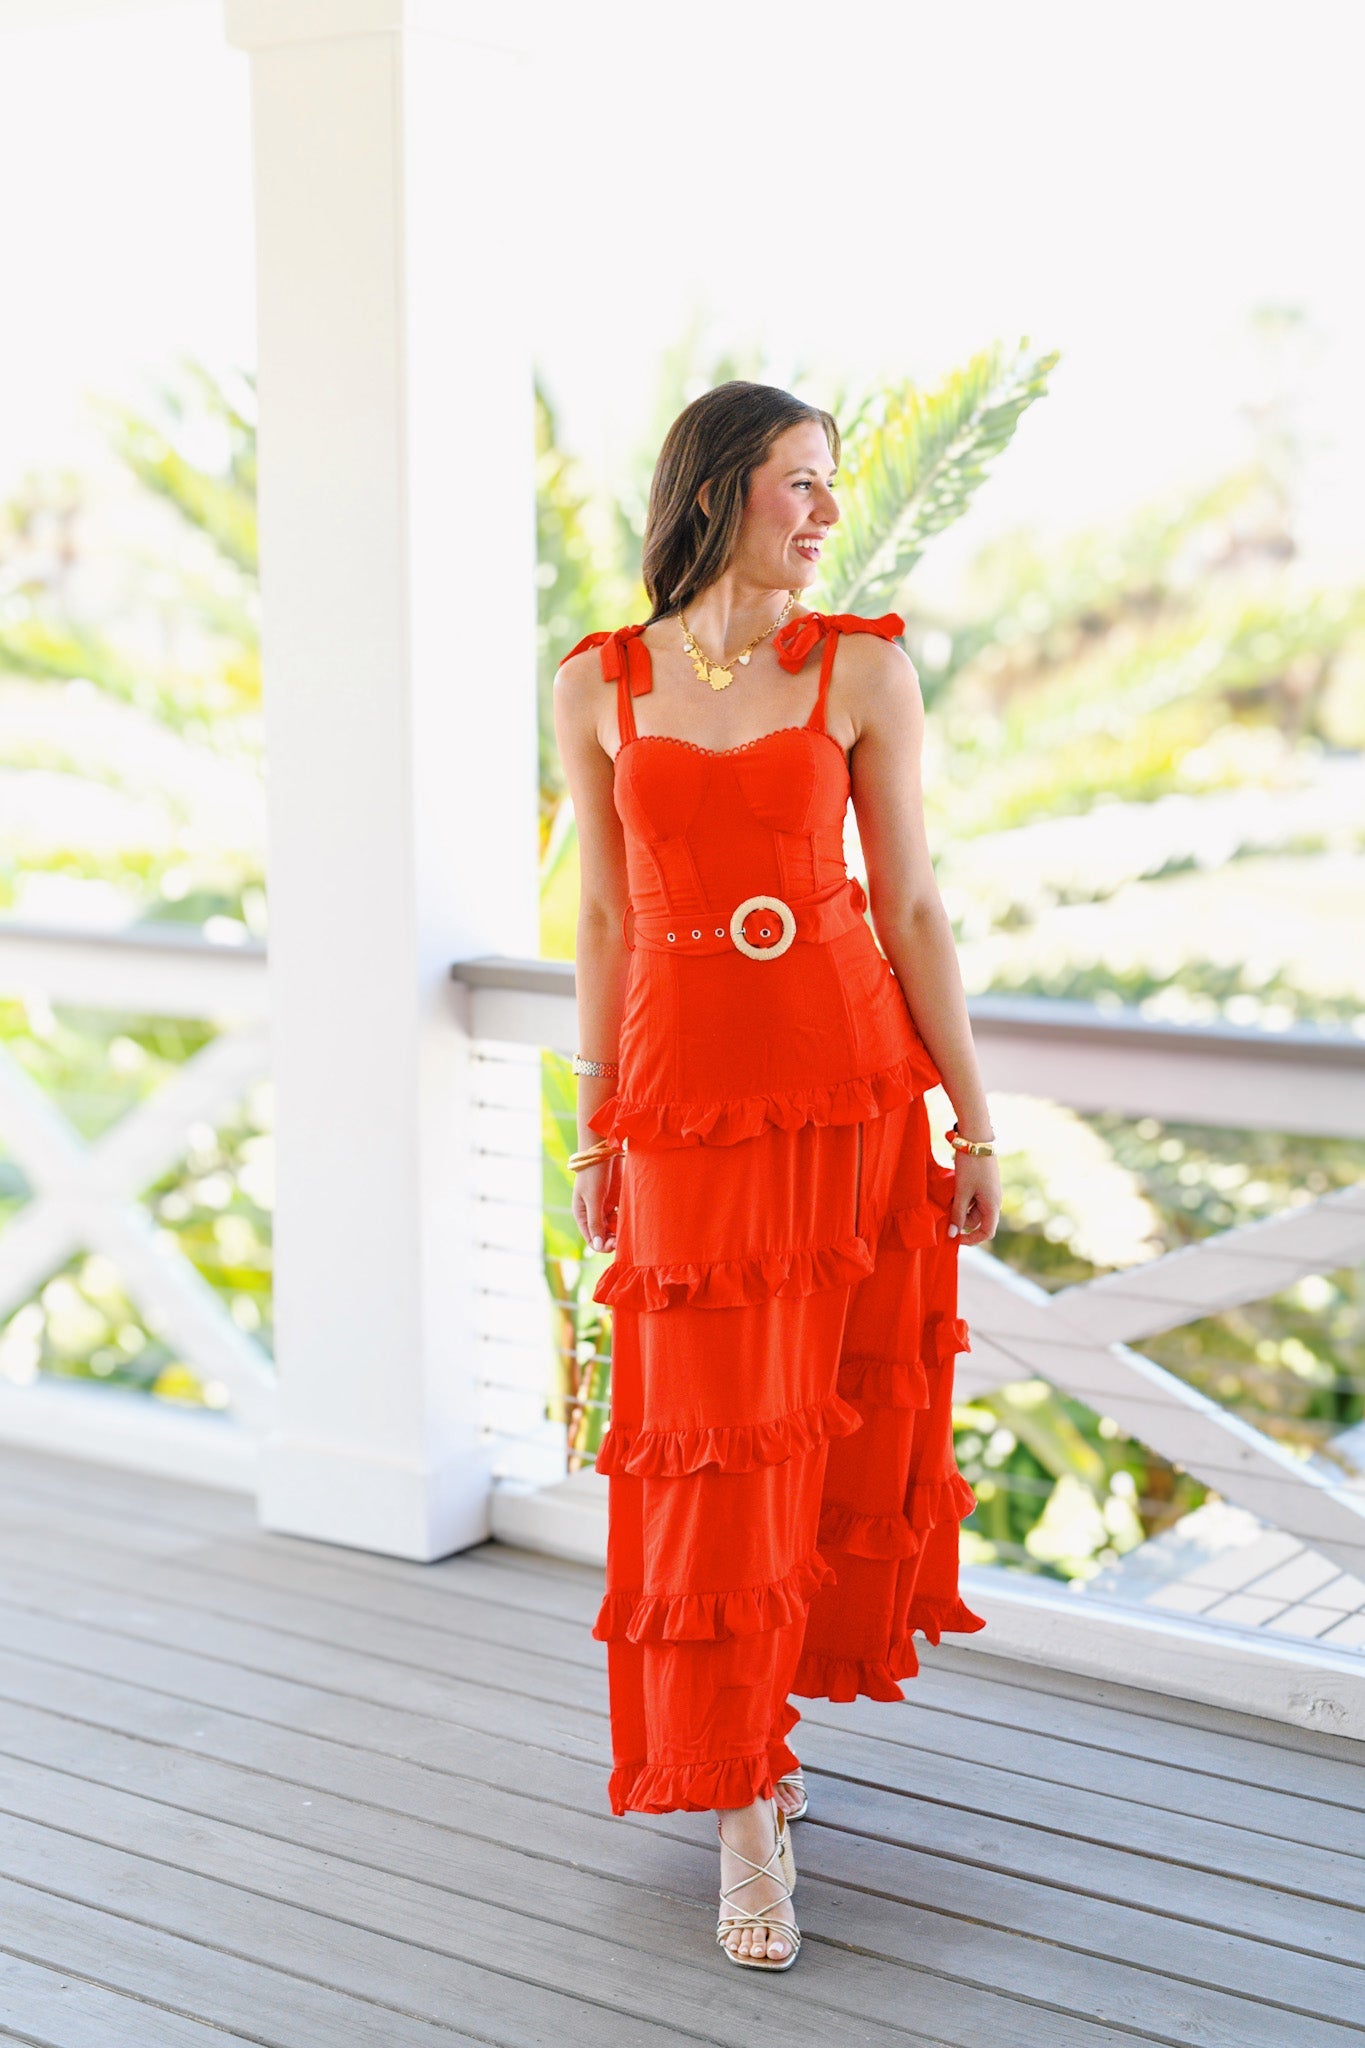 Lana Lace Belt Ruffle Maxi Dress - Tomato Red